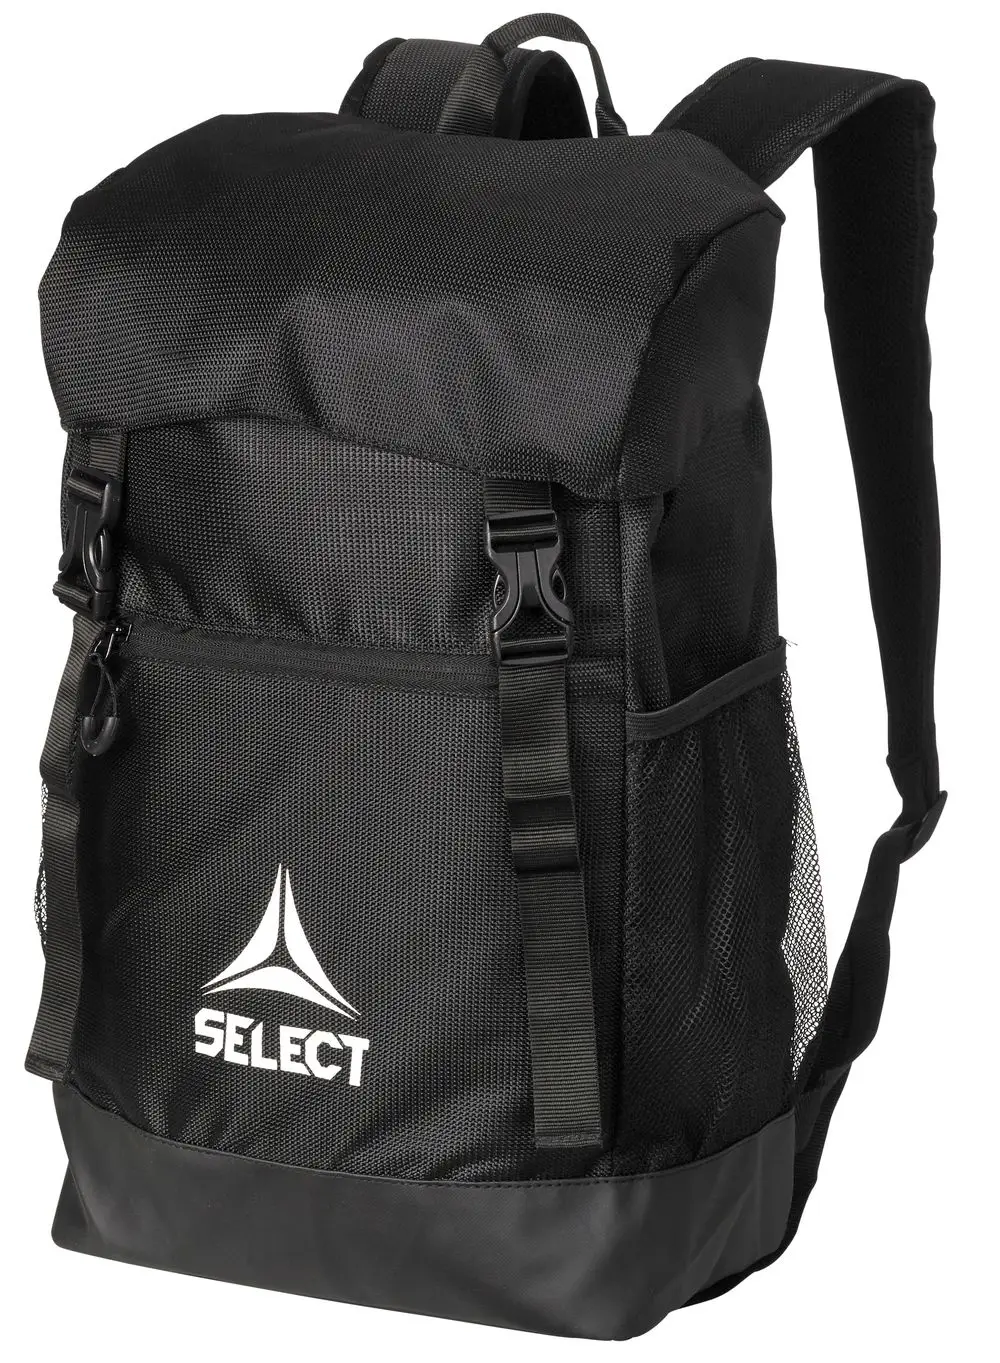 Рюкзак SELECT Milano backpack (010) чорний, 17L